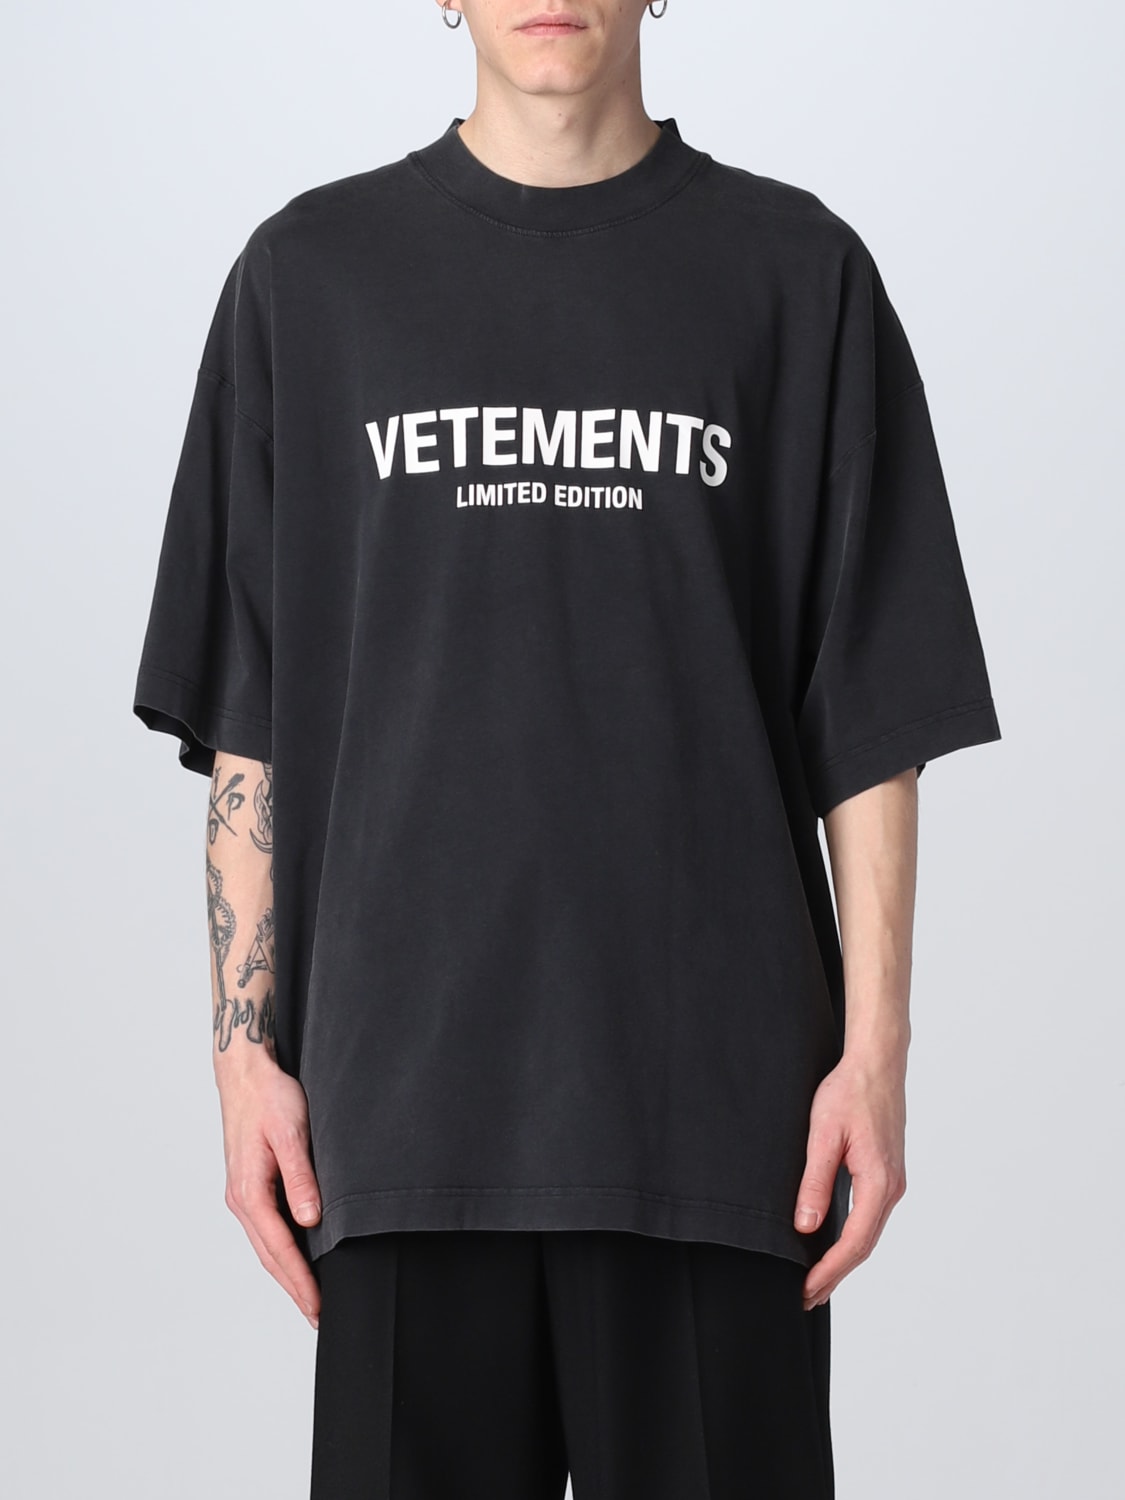 VETEMENTS メンズブラックSTAFF Tシャツ Y46fvecフリマ